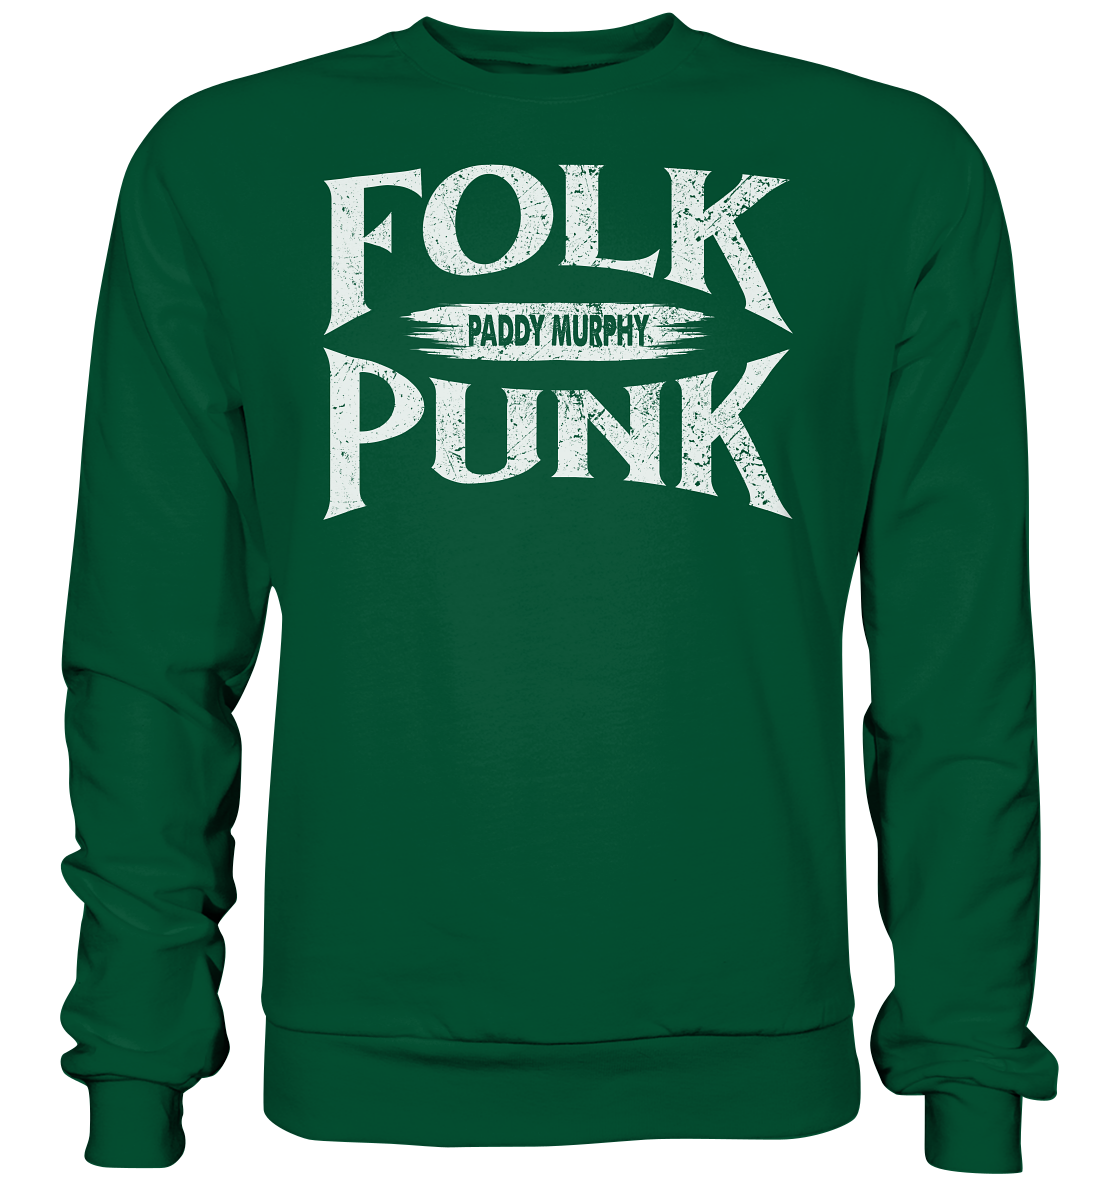 Folkpunk "Paddy Murphy" - Basic Sweatshirt